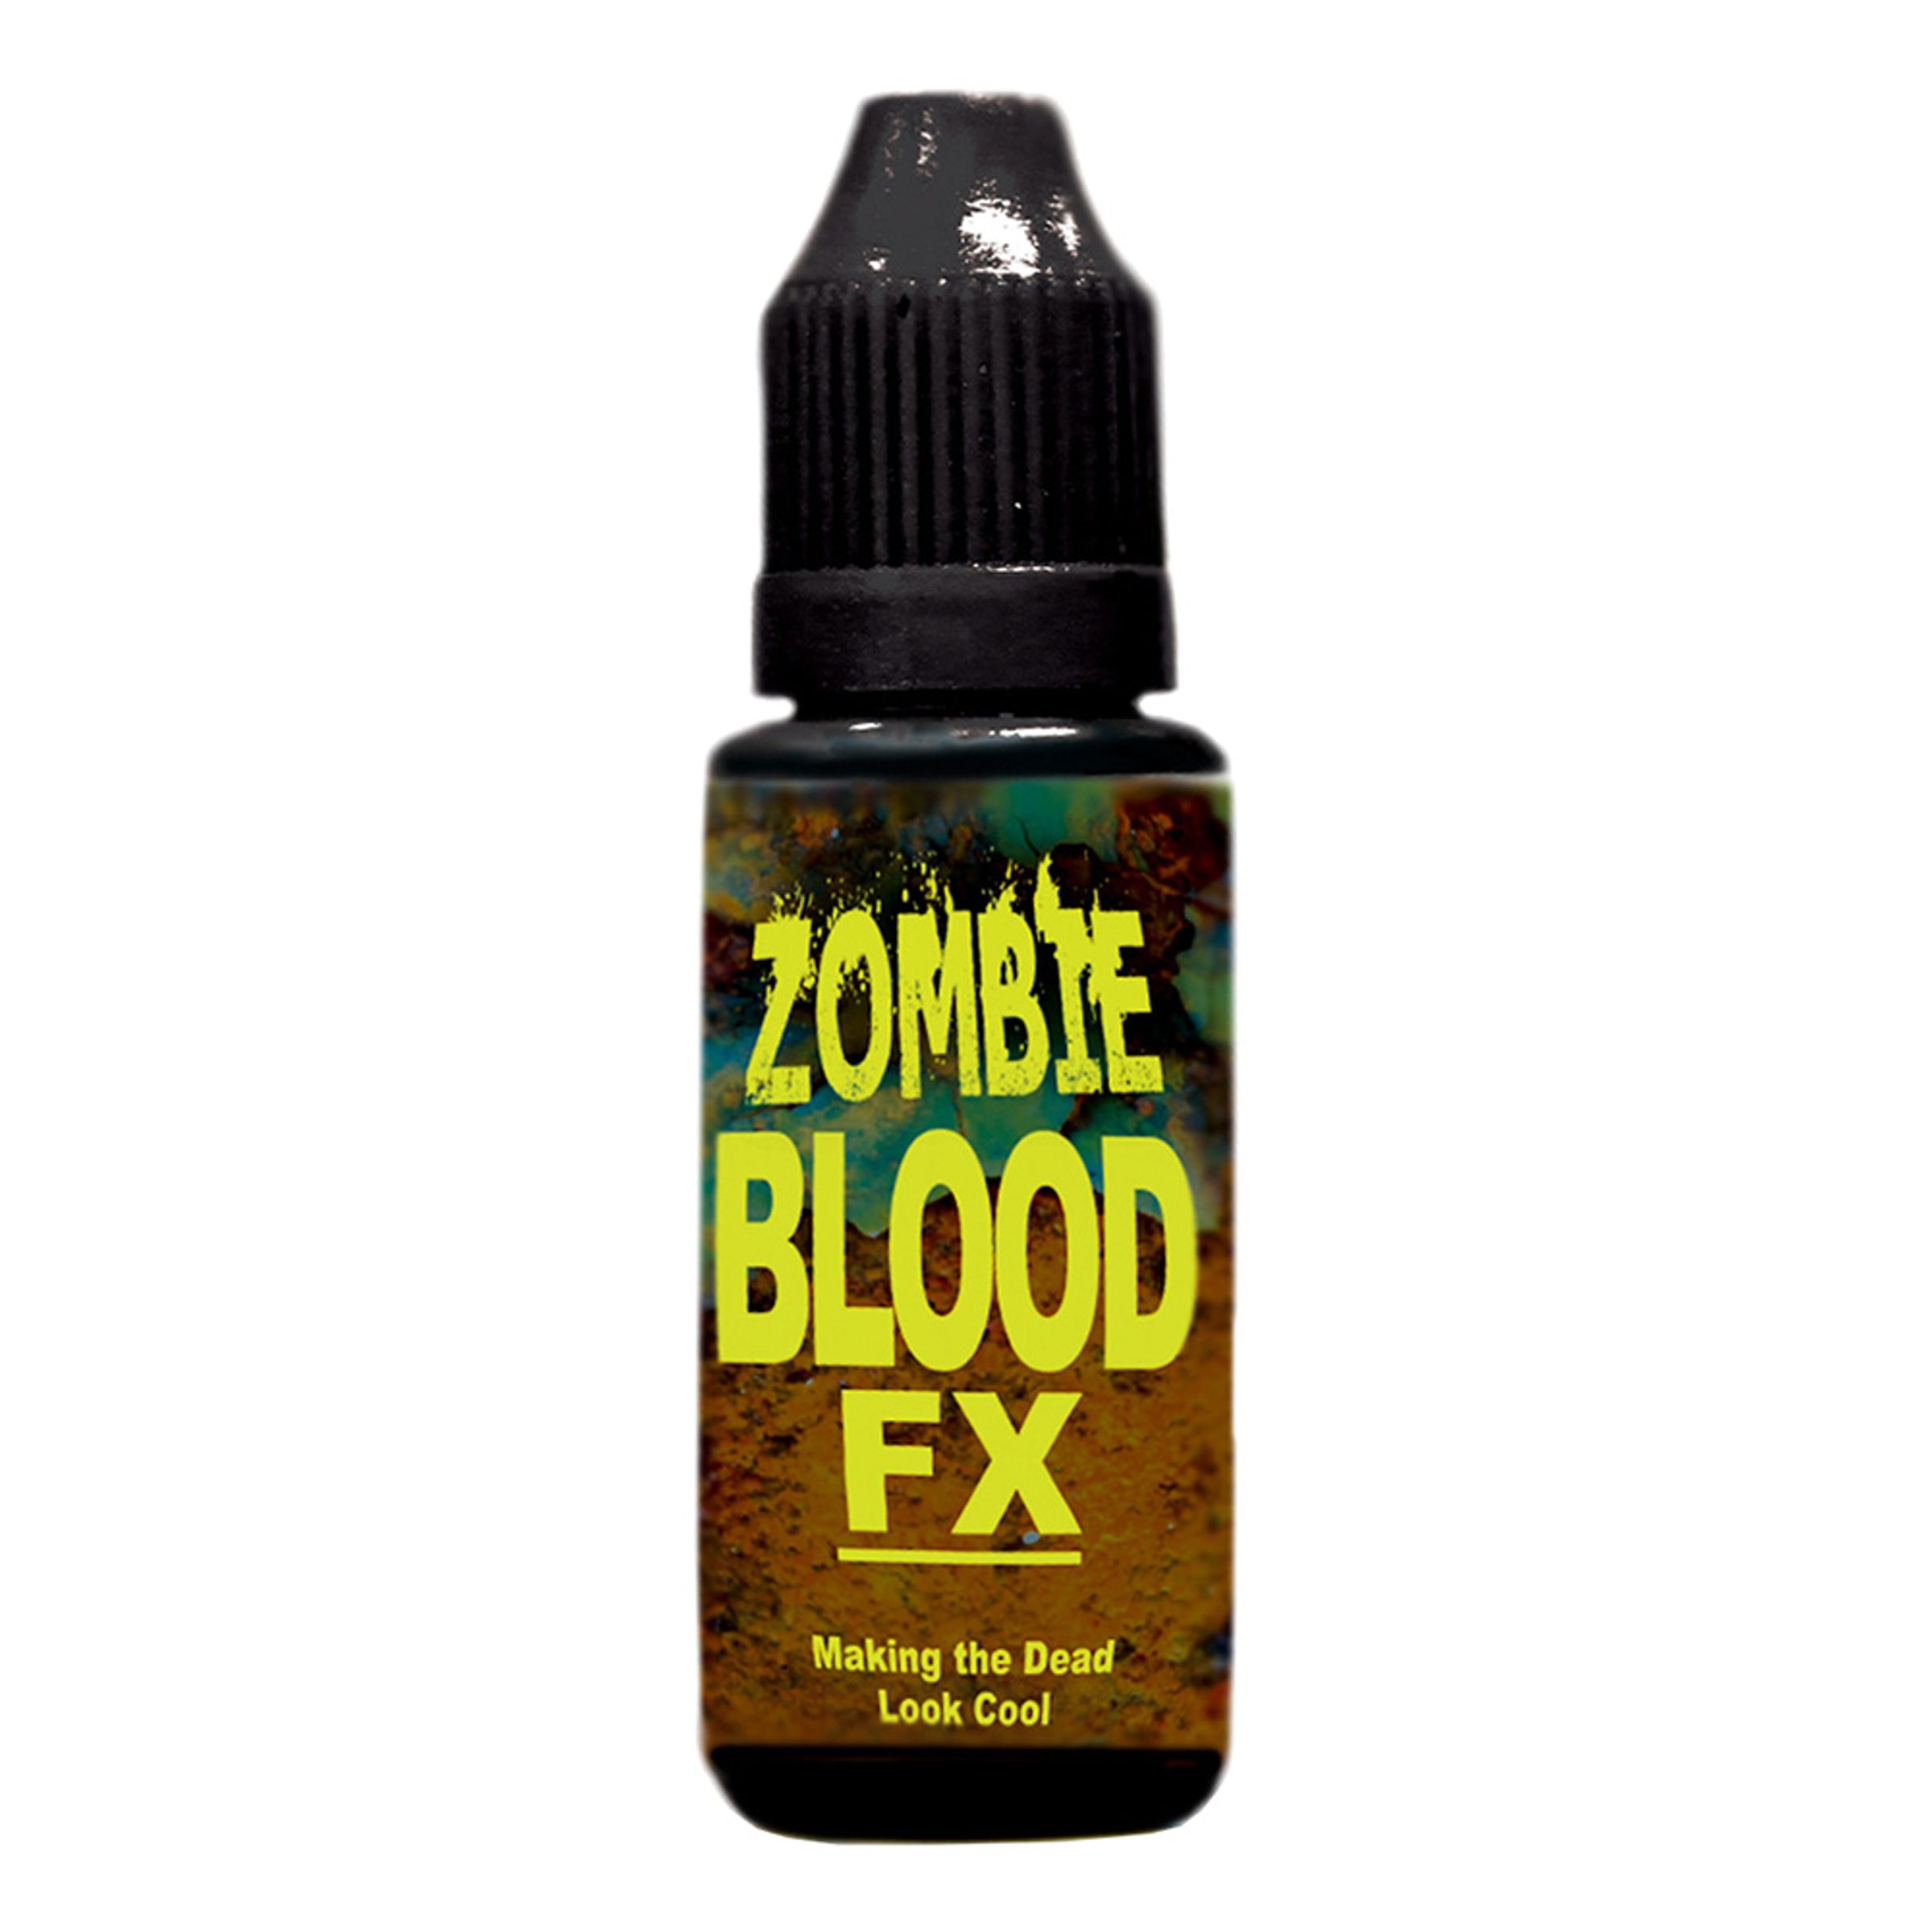 Fejkblod FX Zombie